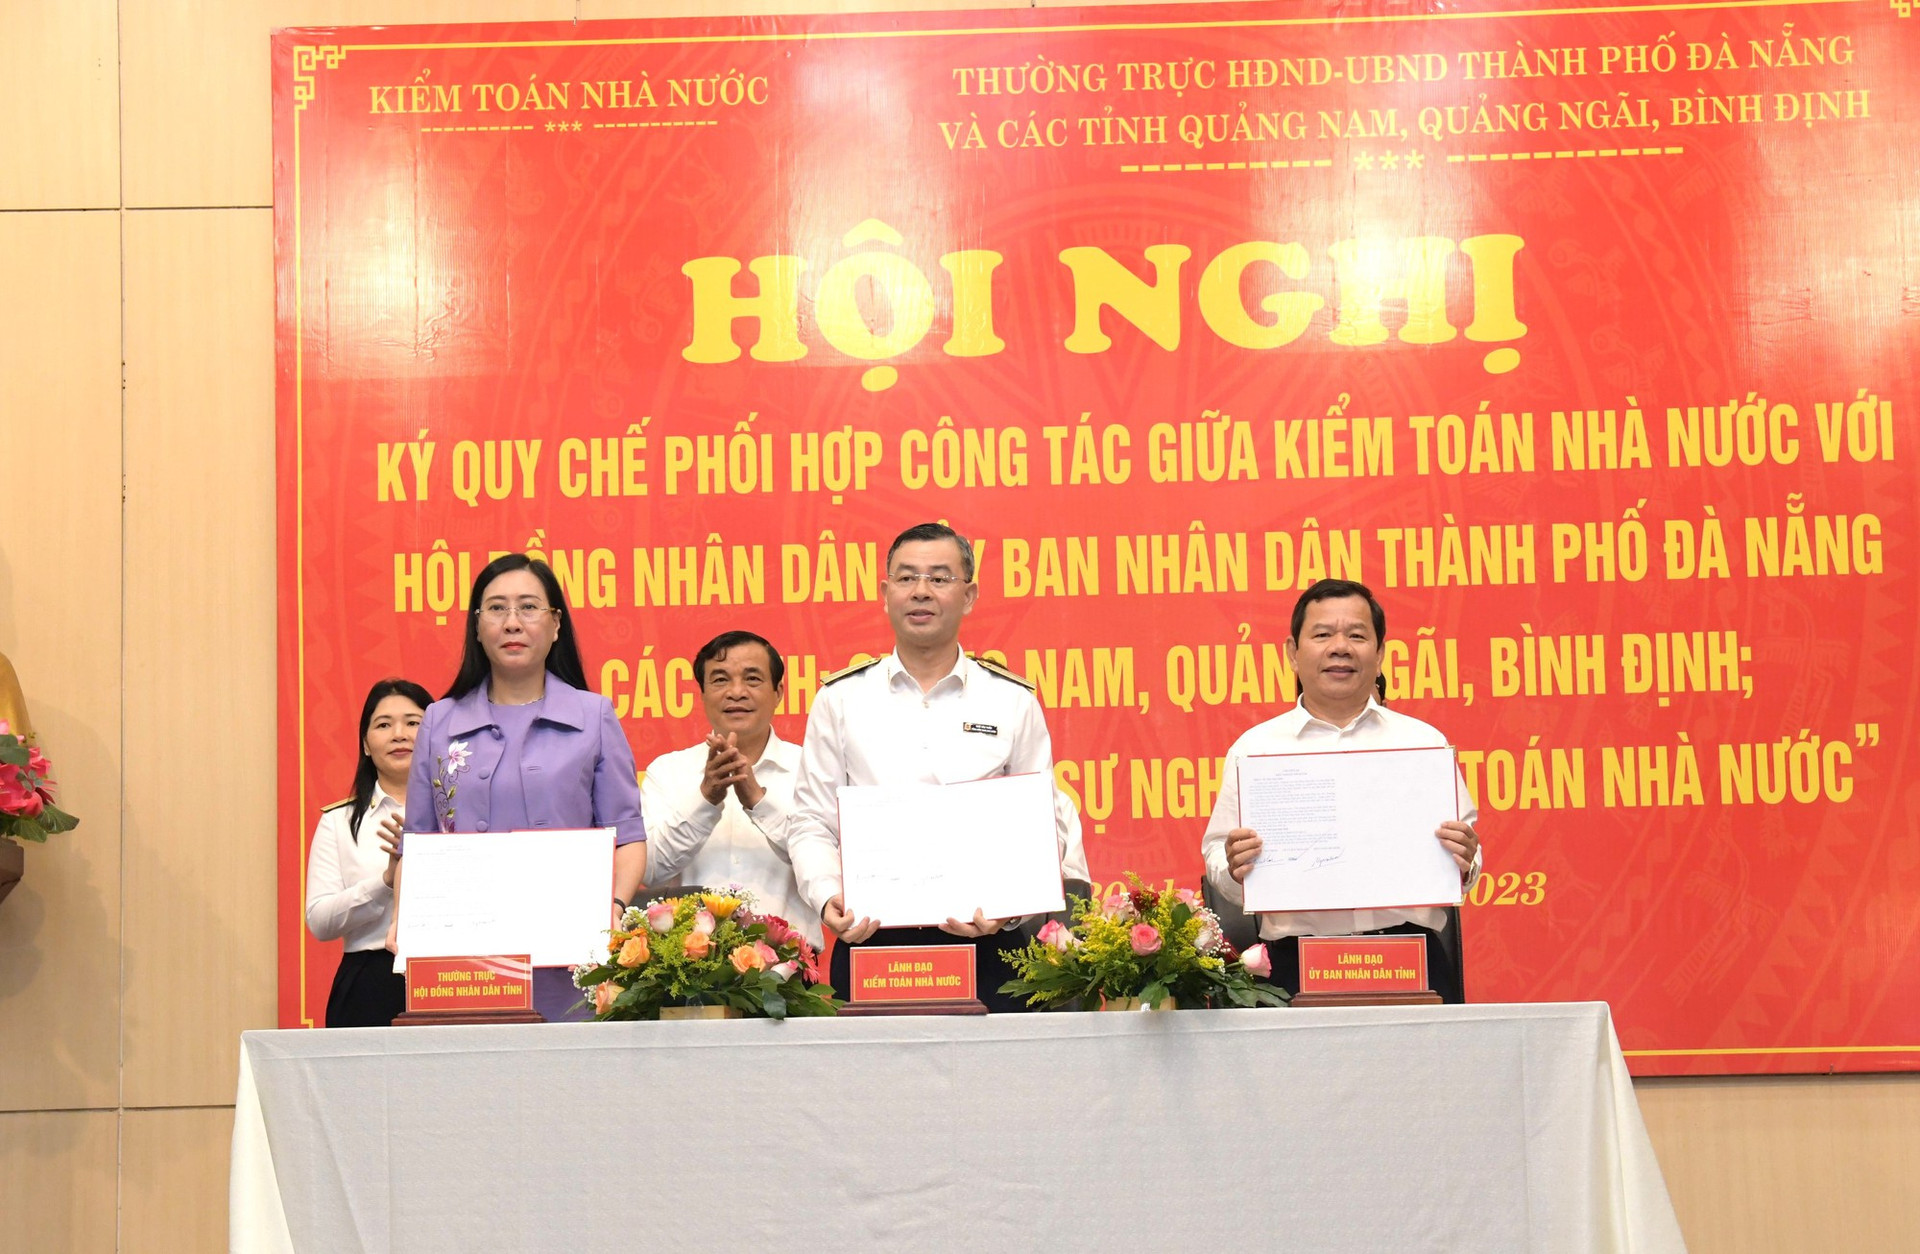 KTNN ký kết phối hợp với Quảng Nam, Quảng Ngãi, Bình Định và Đà Nẵng - Ảnh 1.